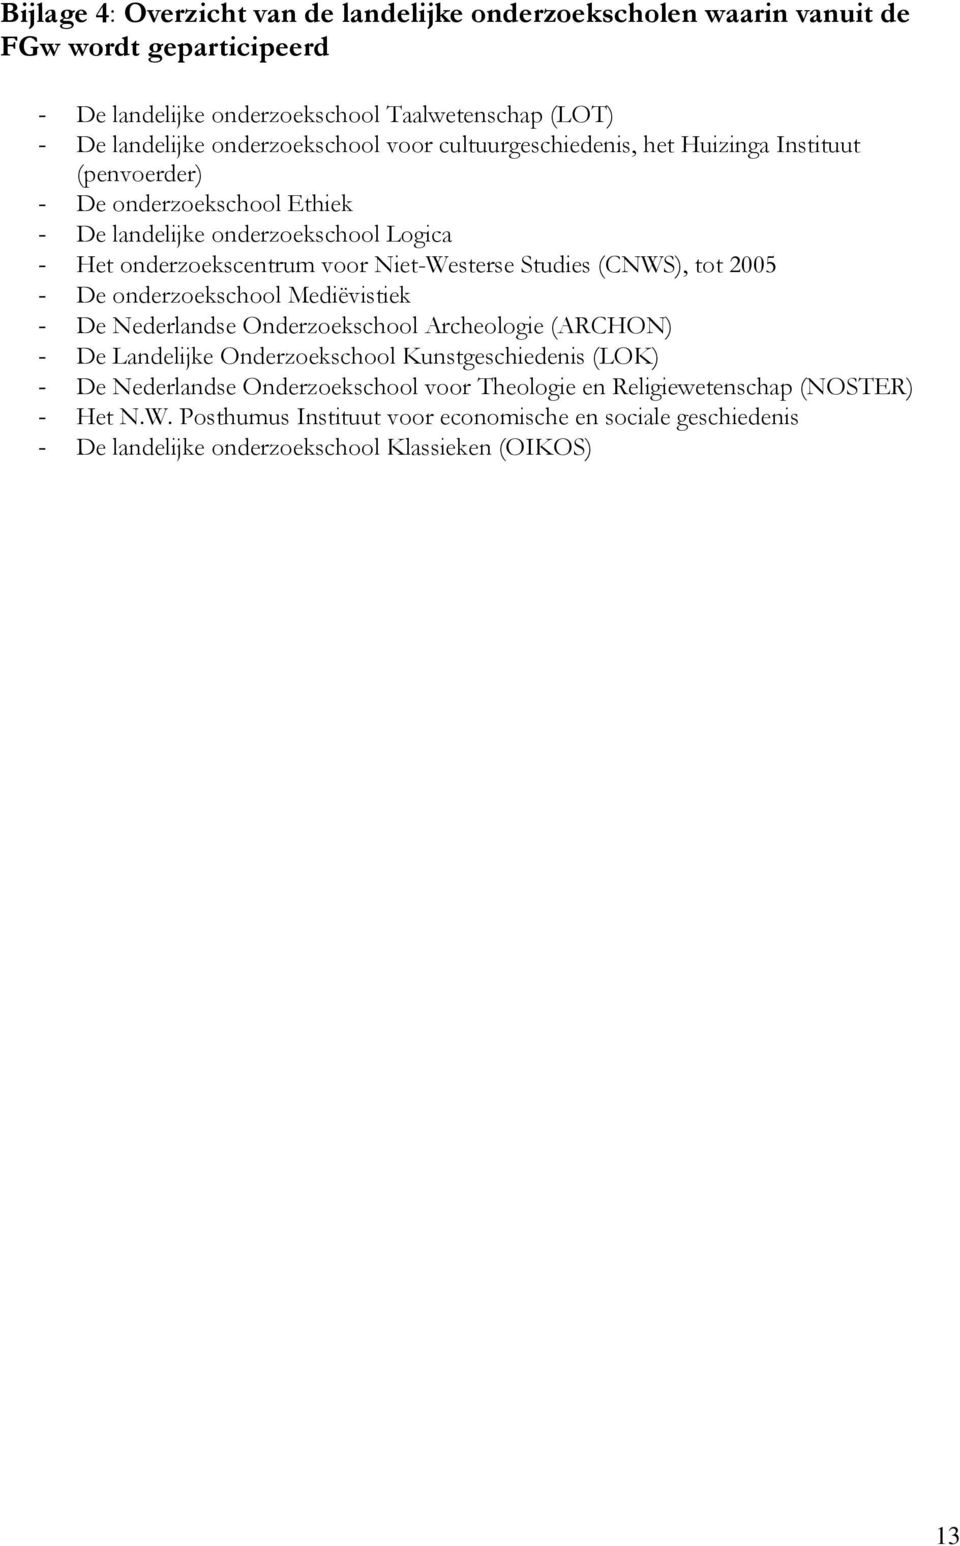 Niet-Westerse Studies (CNWS), tot 2005 - De onderzoekschool Mediëvistiek - De Nederlandse Onderzoekschool Archeologie (ARCHON) - De Landelijke Onderzoekschool Kunstgeschiedenis